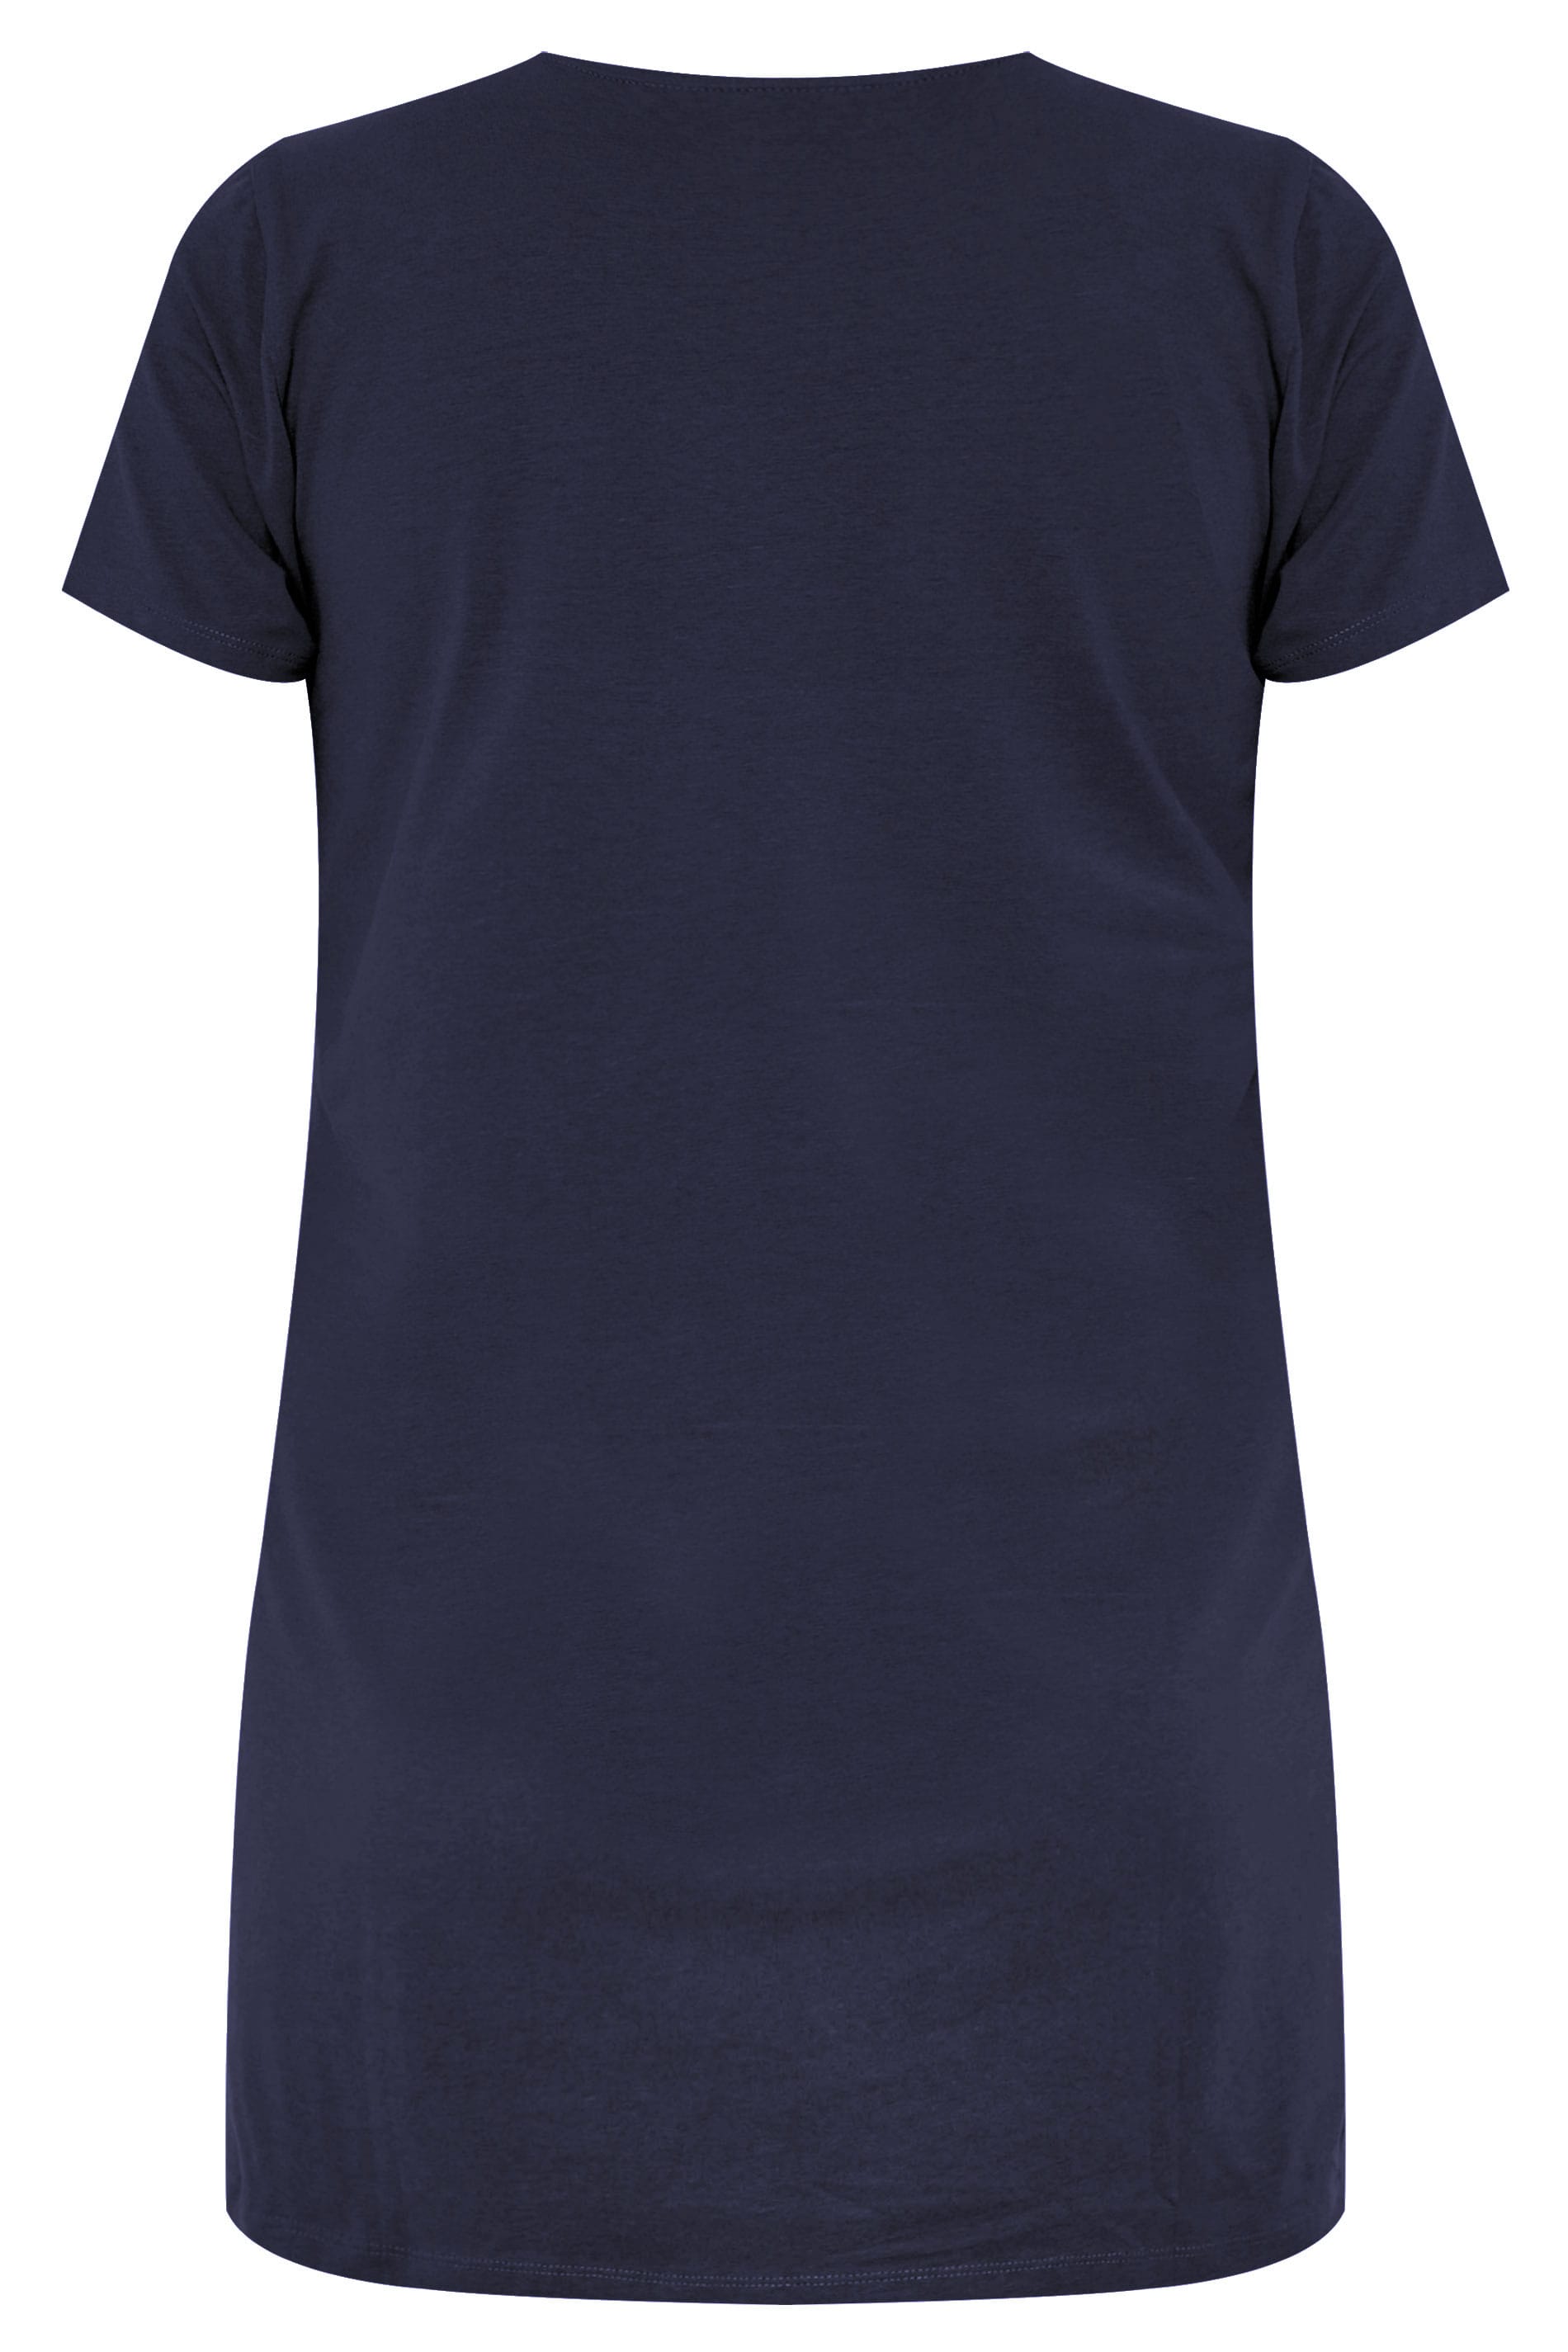 Grande taille  Tops Grande taille  T-Shirts Basiques & Débardeurs | T-Shirt Bleu Marine Coupe Longue - TE40261